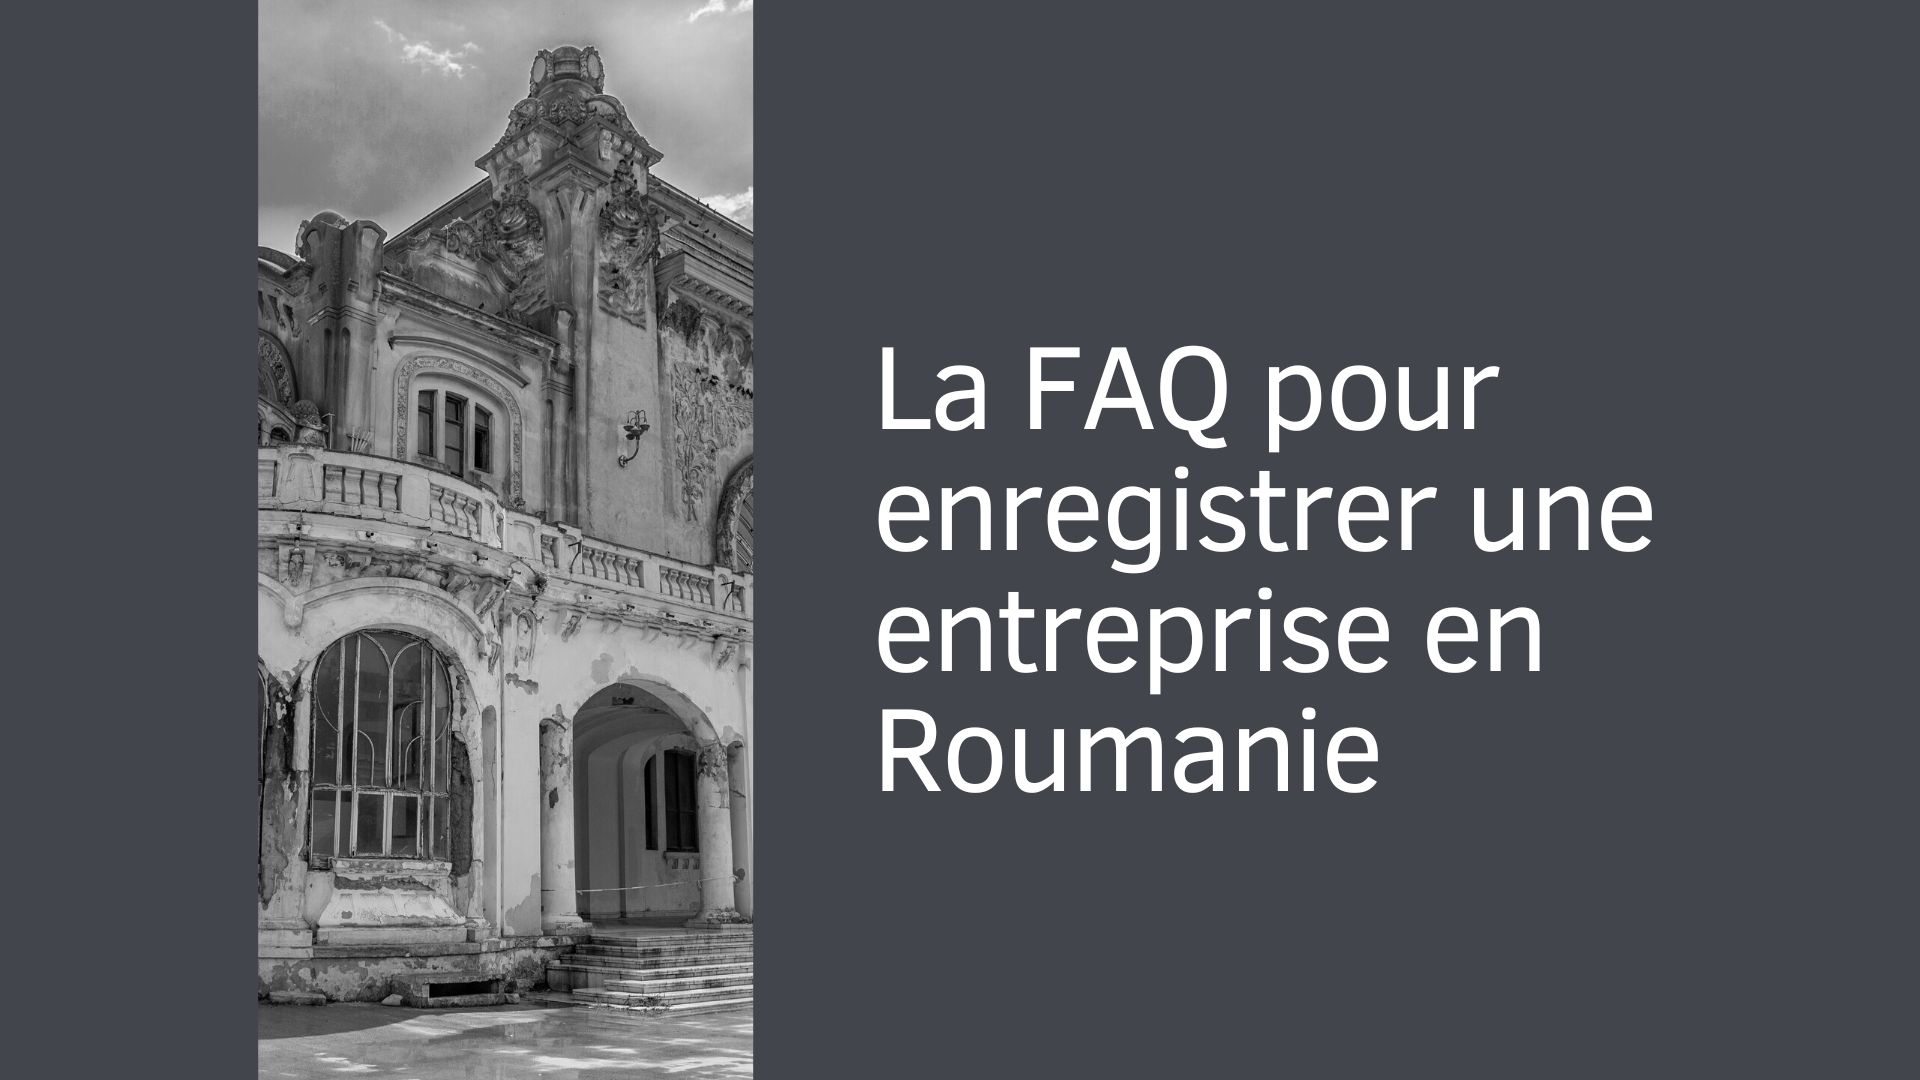 La FAQ pour enregistrer une entreprise en Roumanie